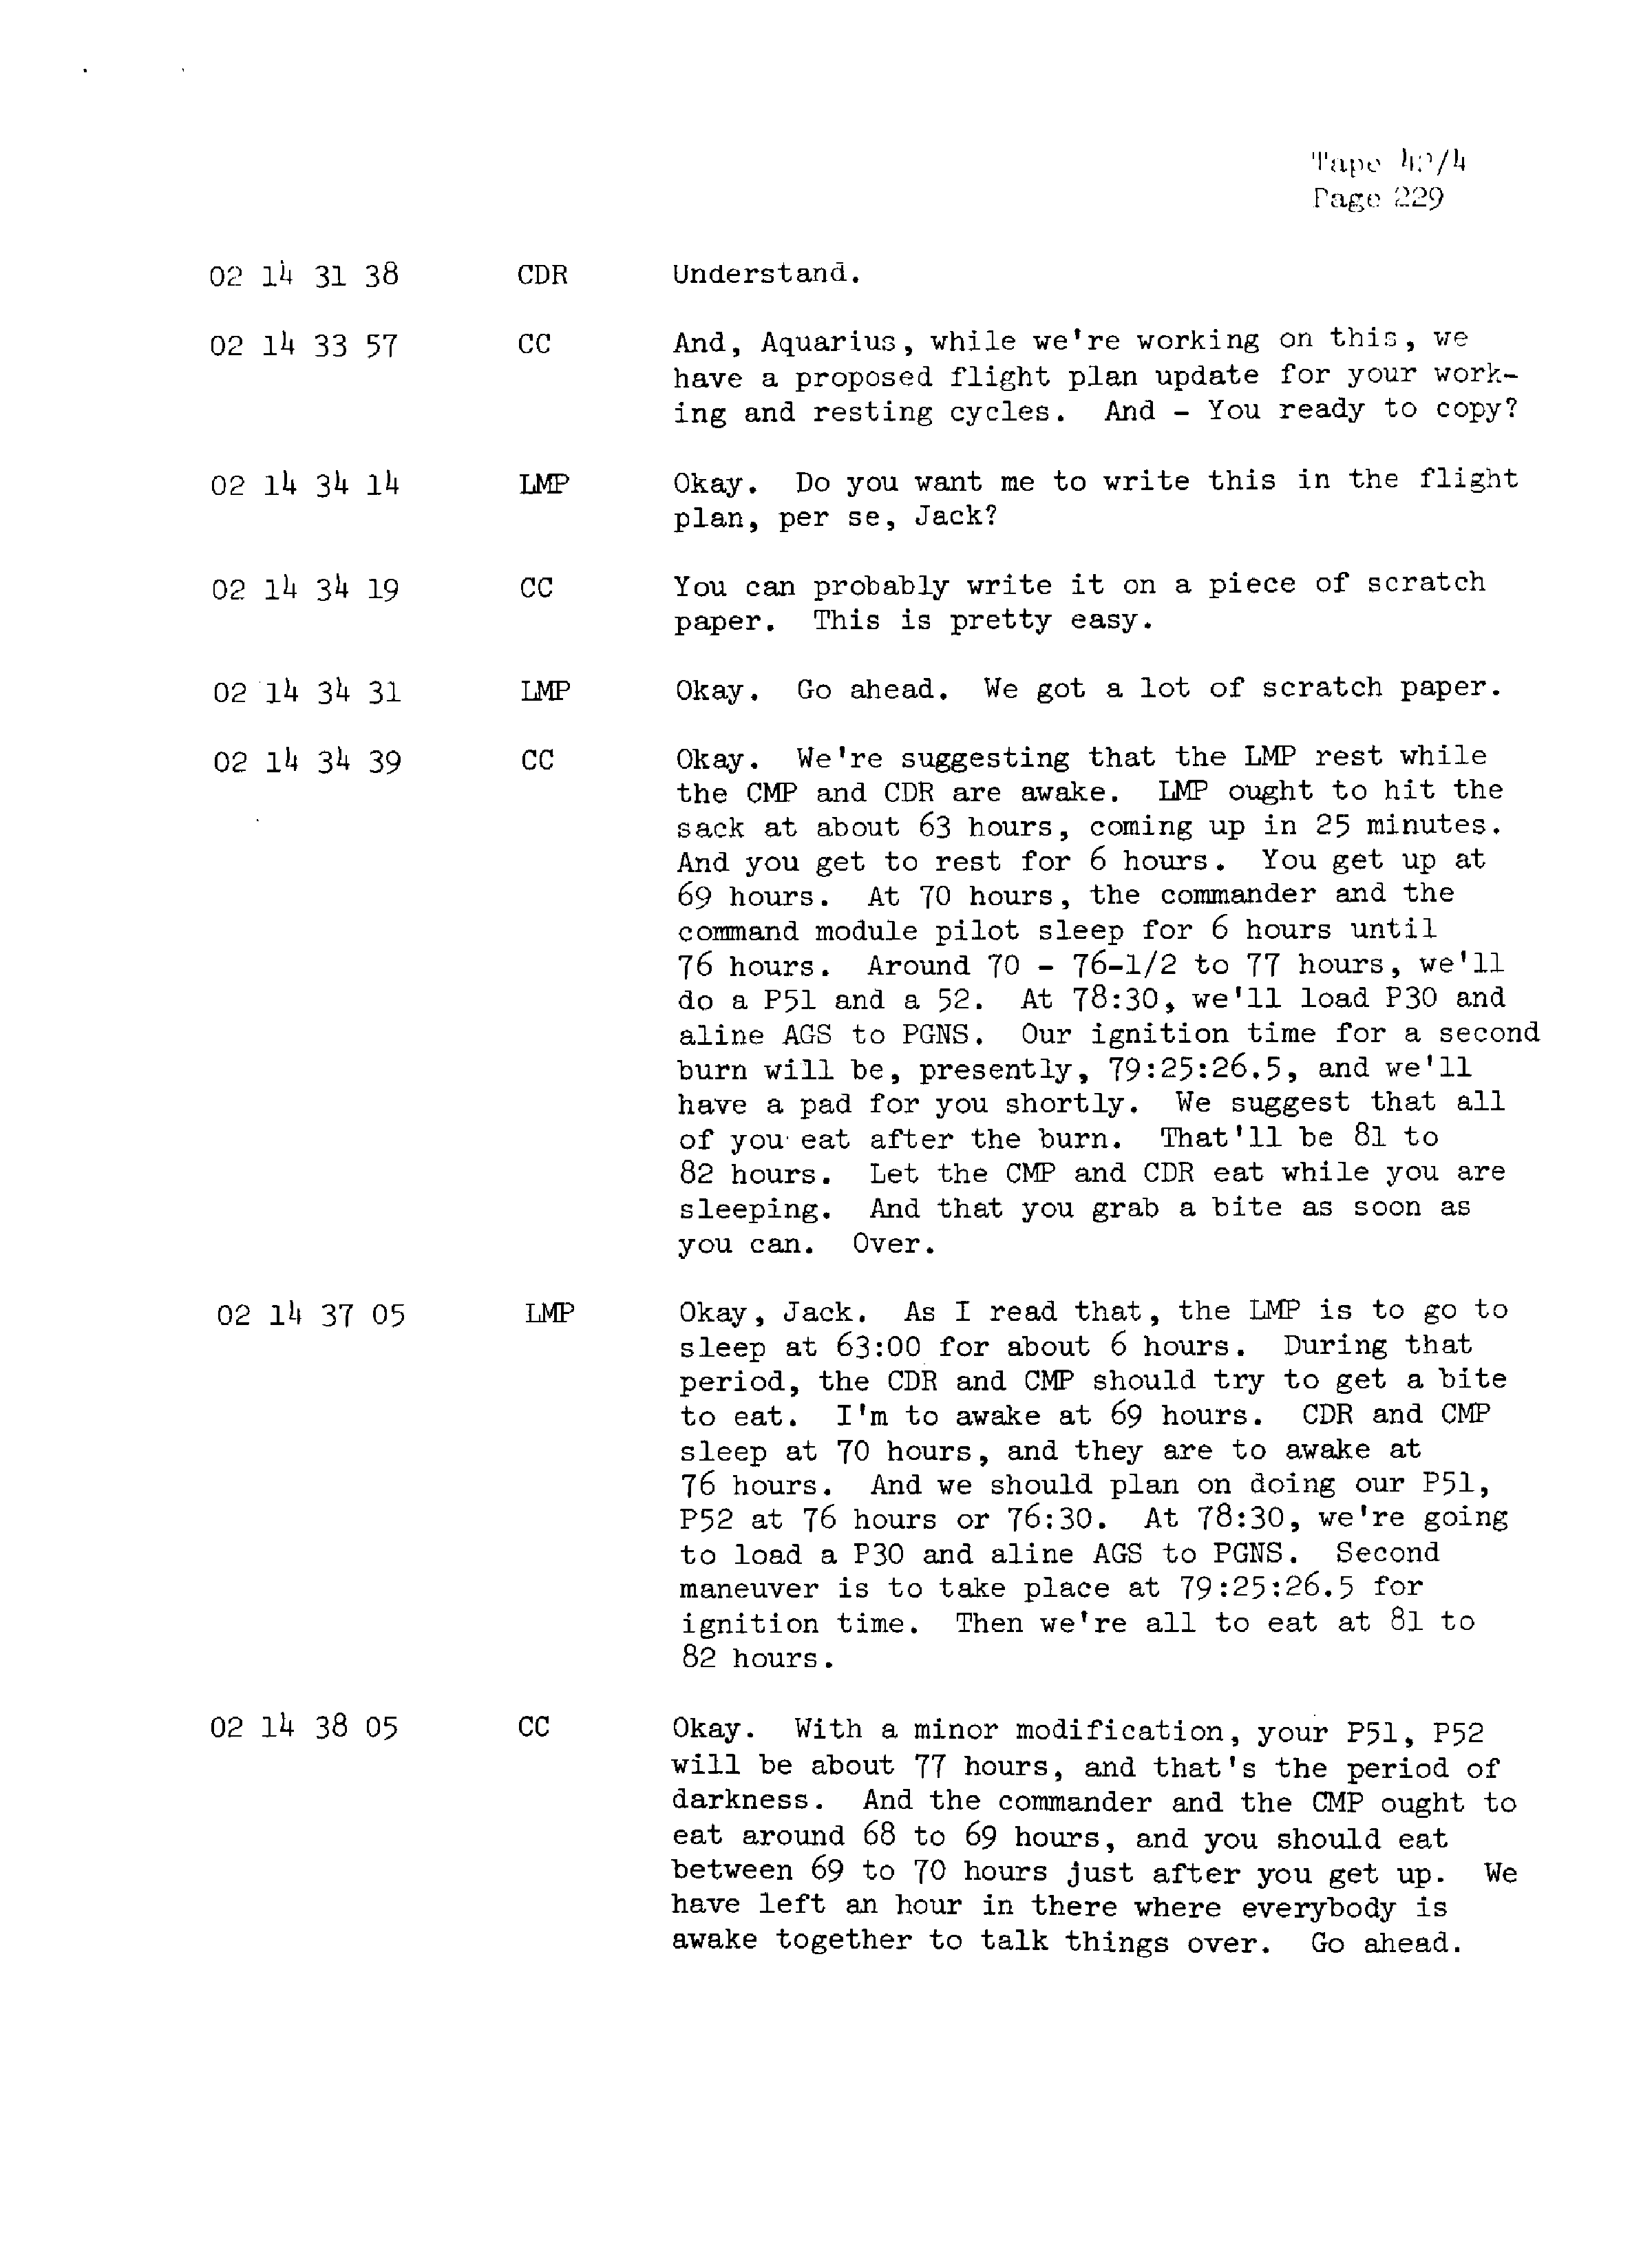 Page 236 of Apollo 13’s original transcript